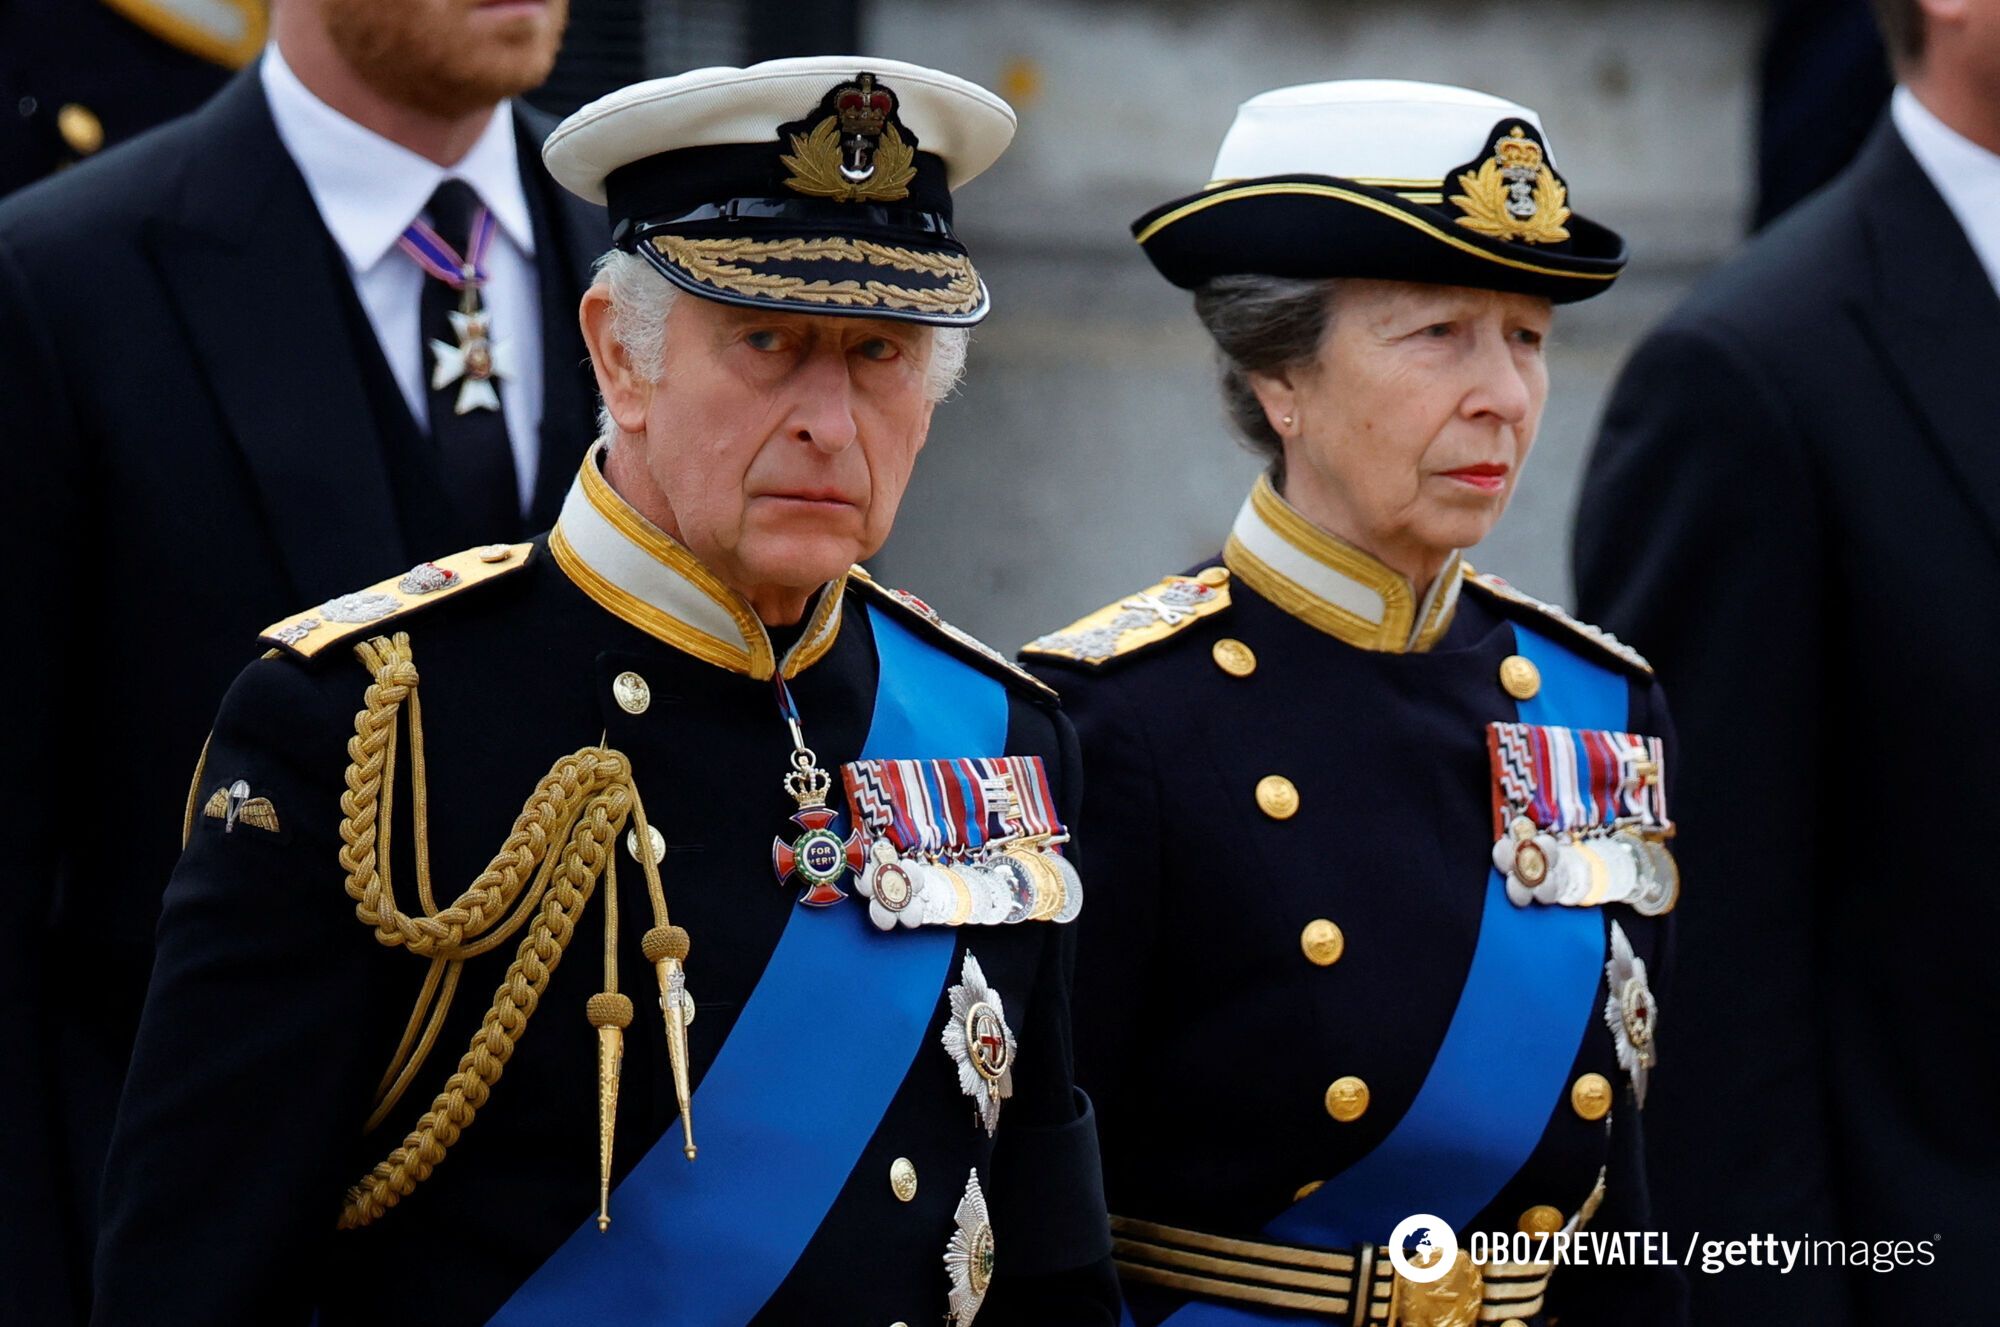 Budżetowe jedzenie, naprawianie ubrań i nie tylko: jak członkowie brytyjskiej rodziny królewskiej oszczędzają pieniądze